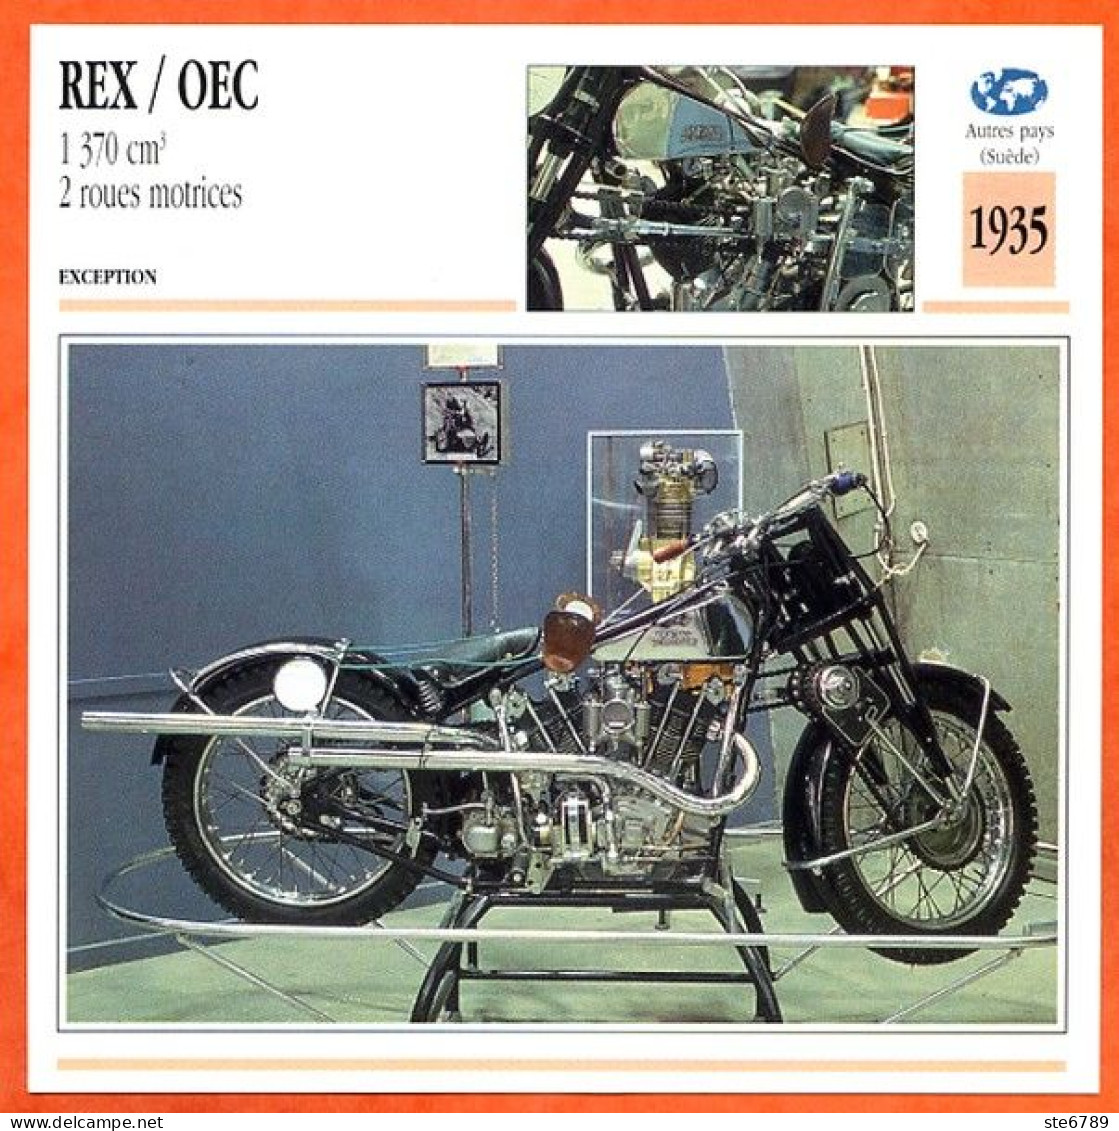 REX / OEC 1370 2 R Motrices 1935 Suede Fiche Technique Moto - Sports